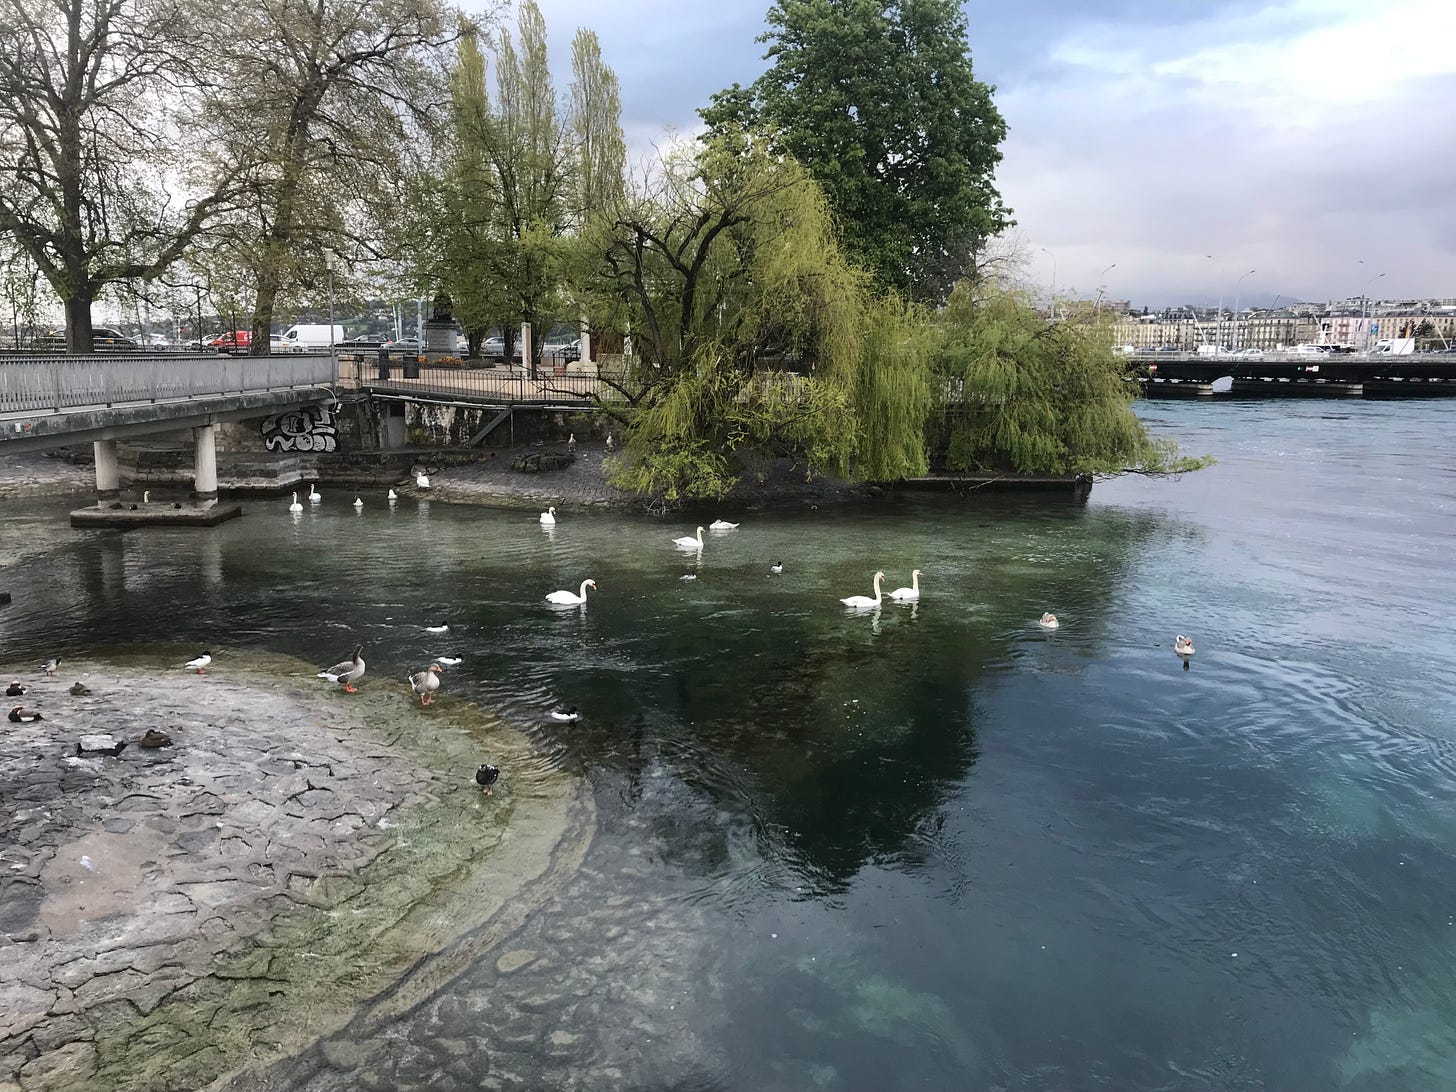 Lake birds swim on Lake Geneva.